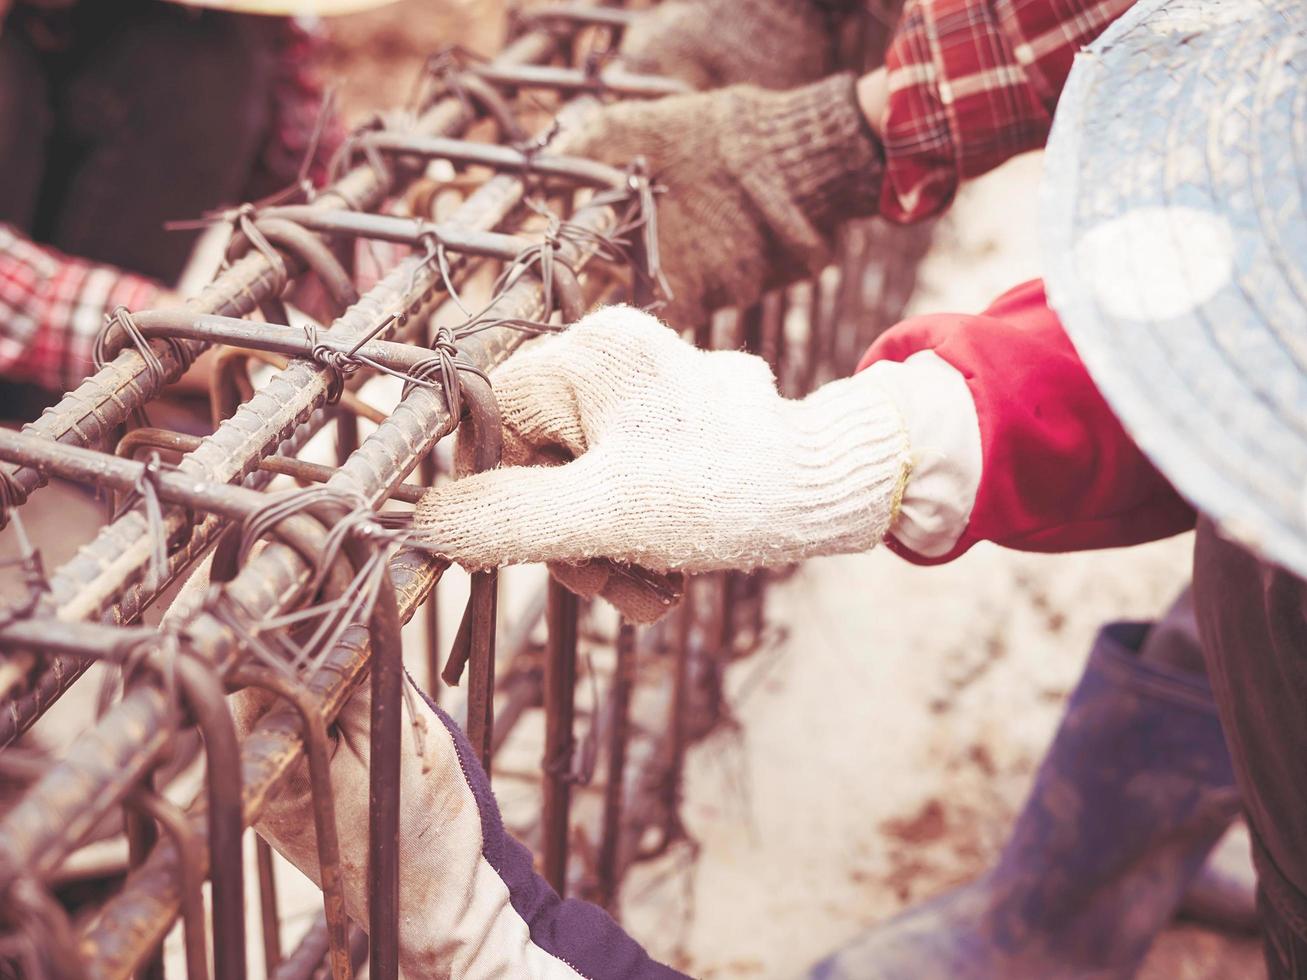 foto de estilo vintage de los trabajadores de la construcción están instalando varillas de acero en una viga de hormigón armado